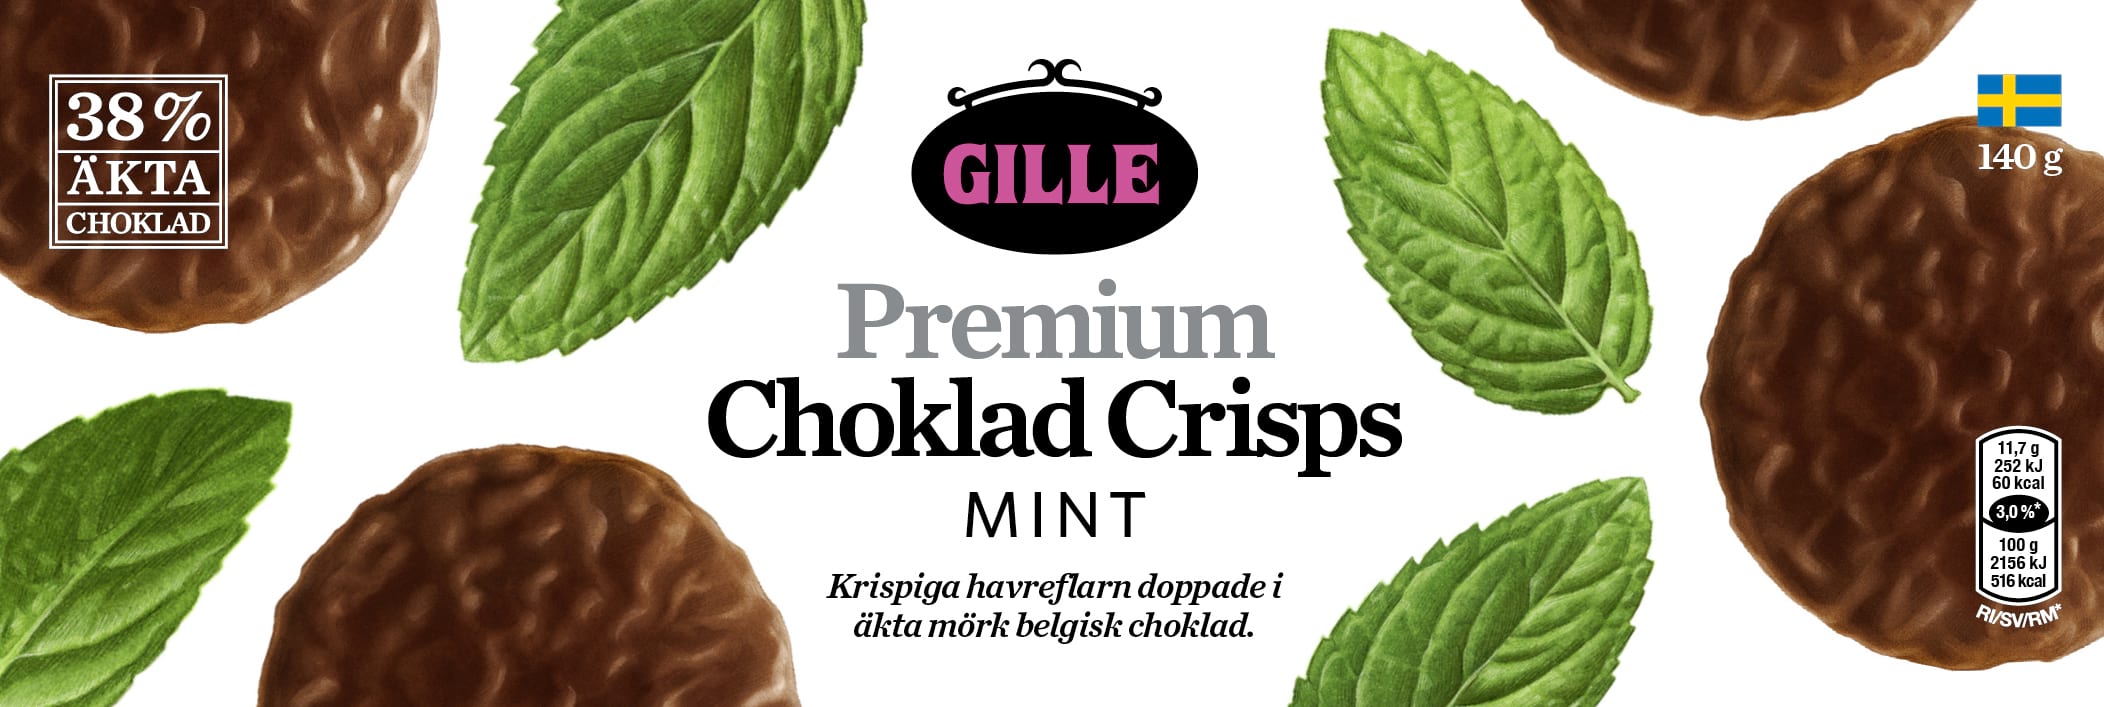 Illustrationen på förpackningen till Gille premium choklad crisps mint